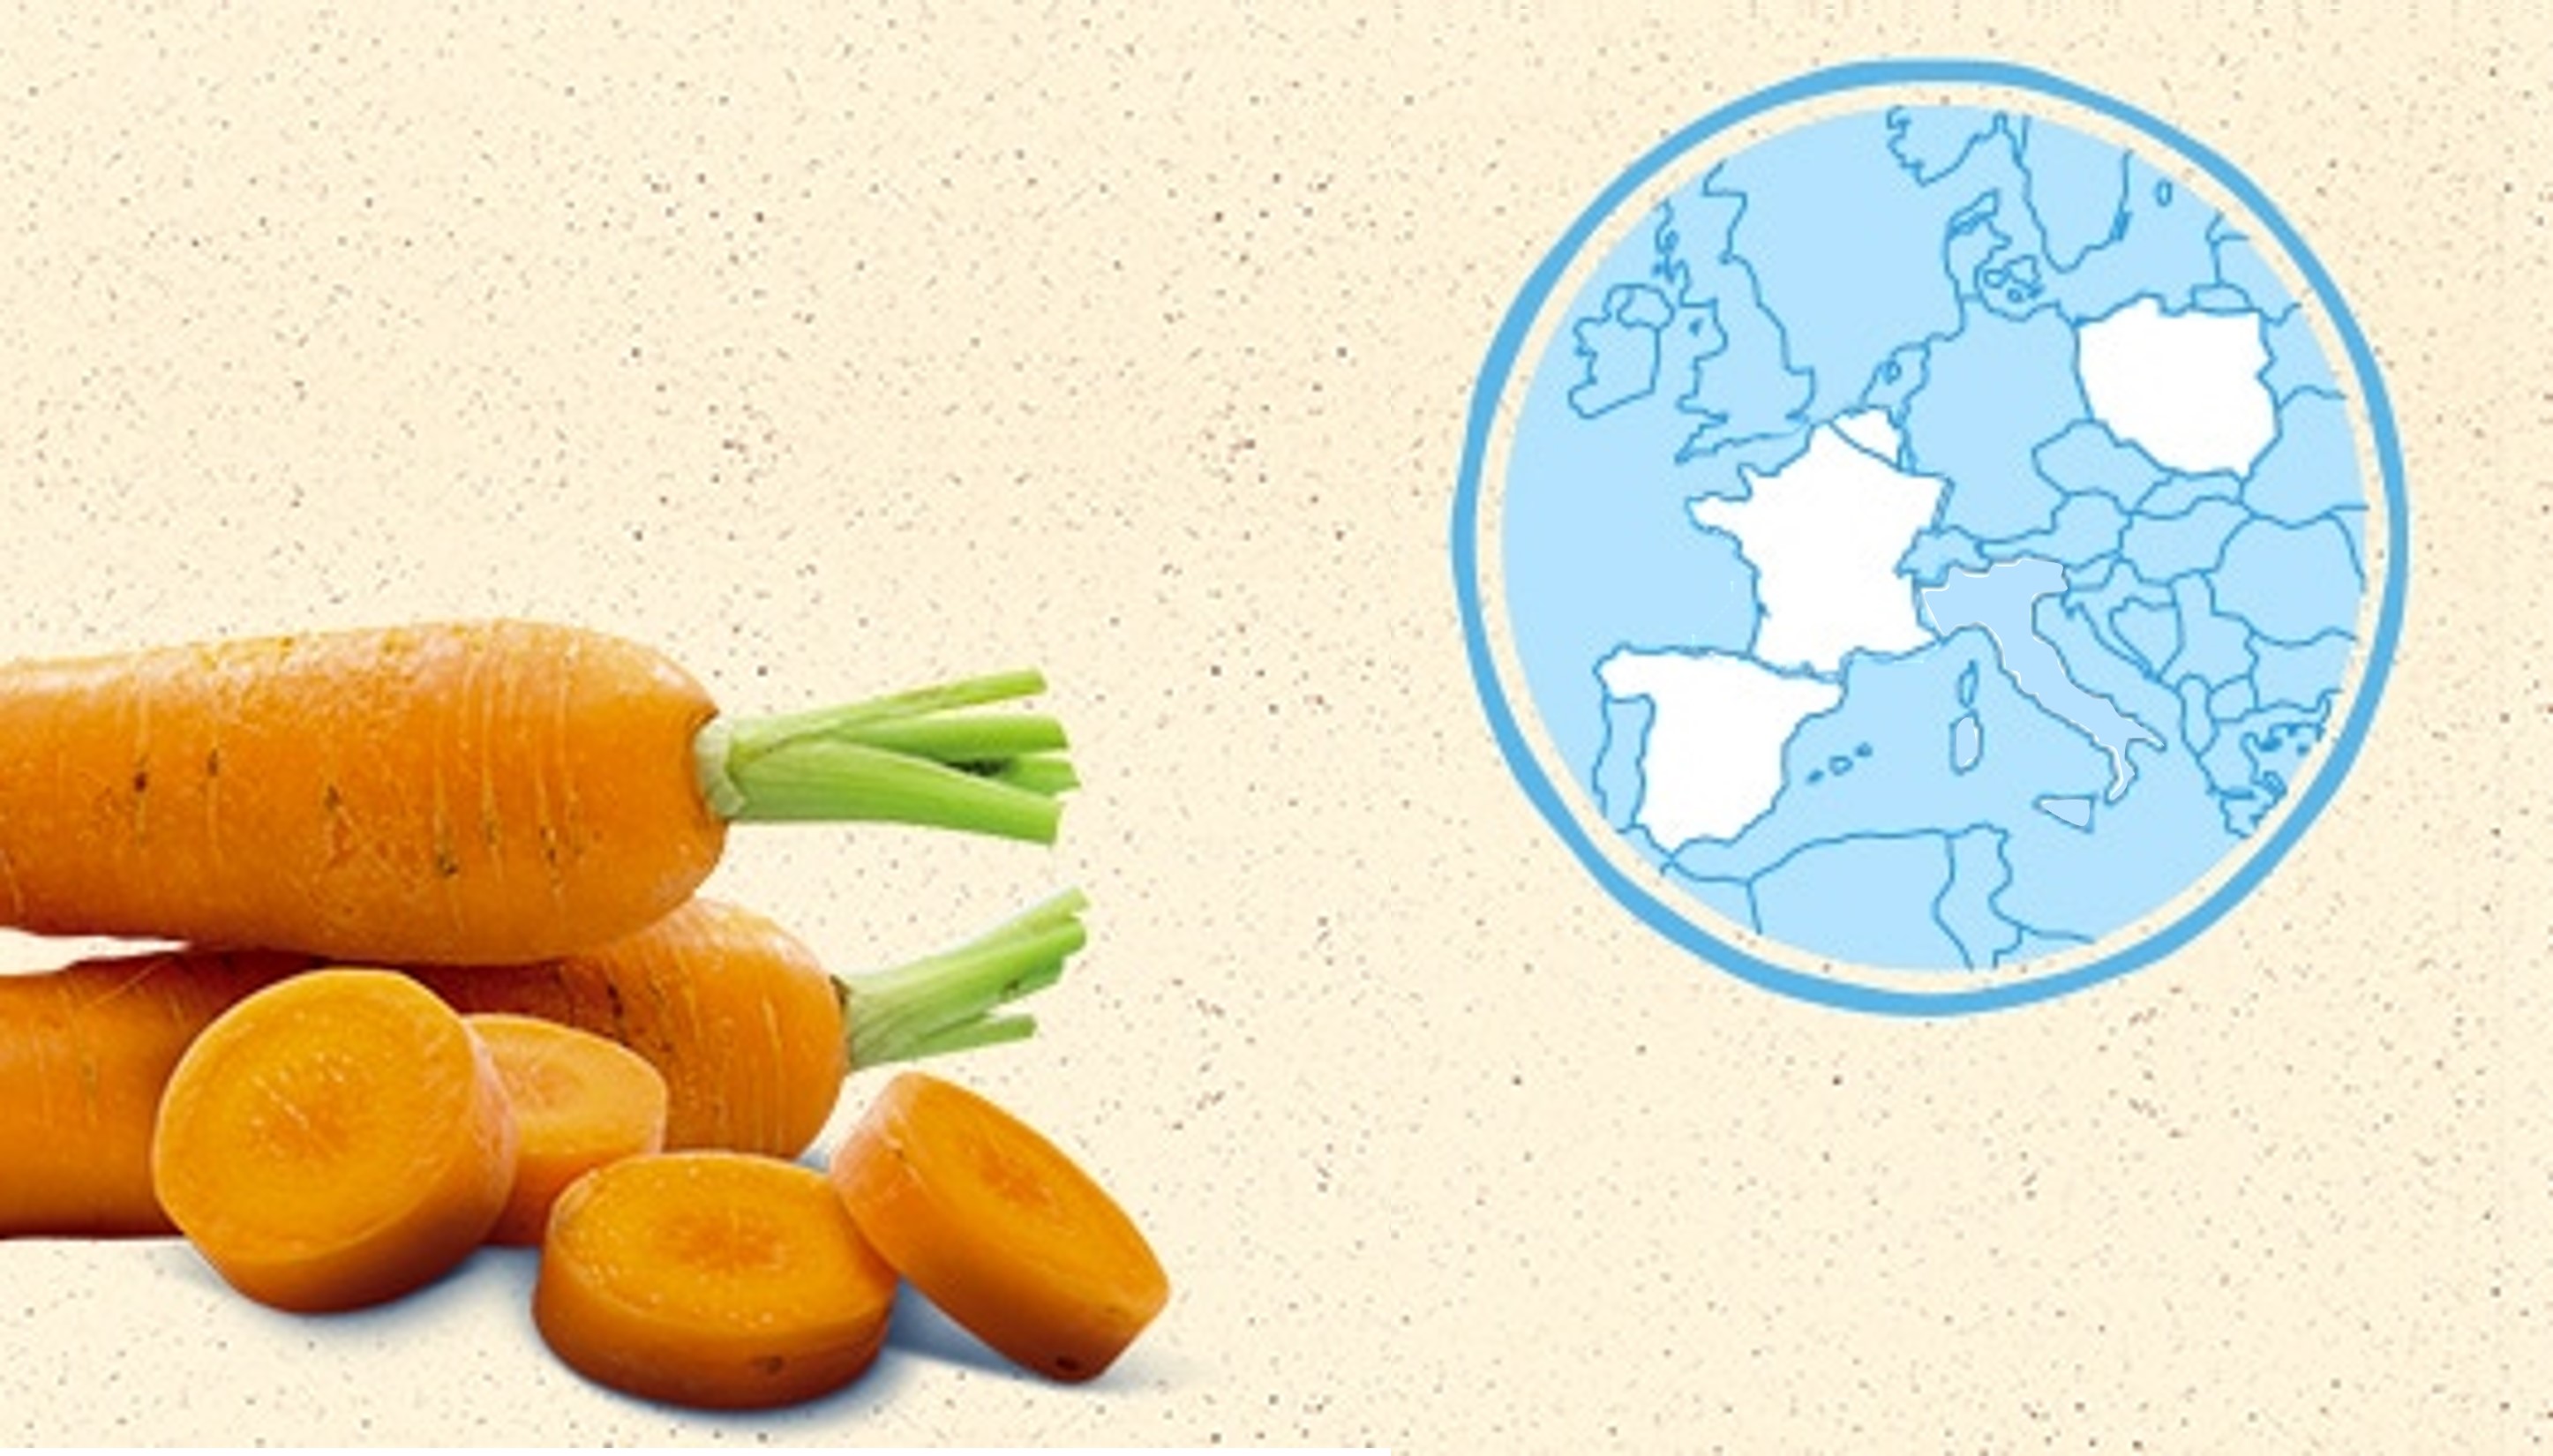 La carotte de France, de Belgique, d'Espagne et Pologne